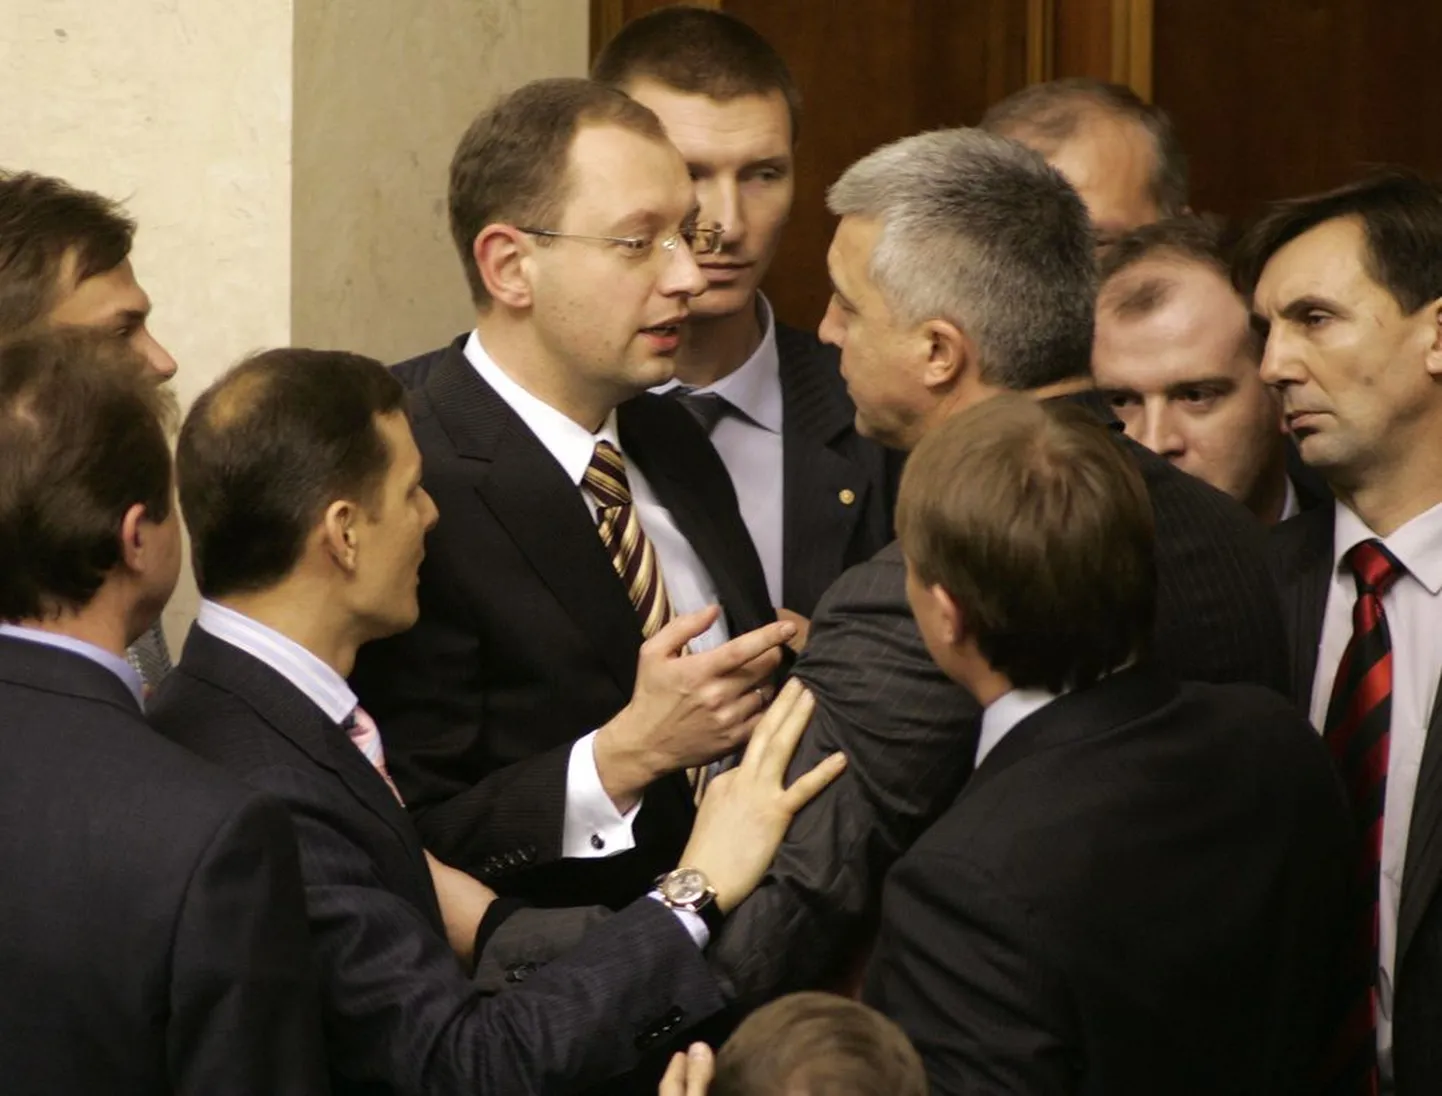 Praeguse peaministri Arseni Jatsenjuki vastasseis Regioonide Partei saadikutega ajal, mil ta oli veel parlamendispiiker ja Ukraina kriis alles meeleavalduste tasemel.